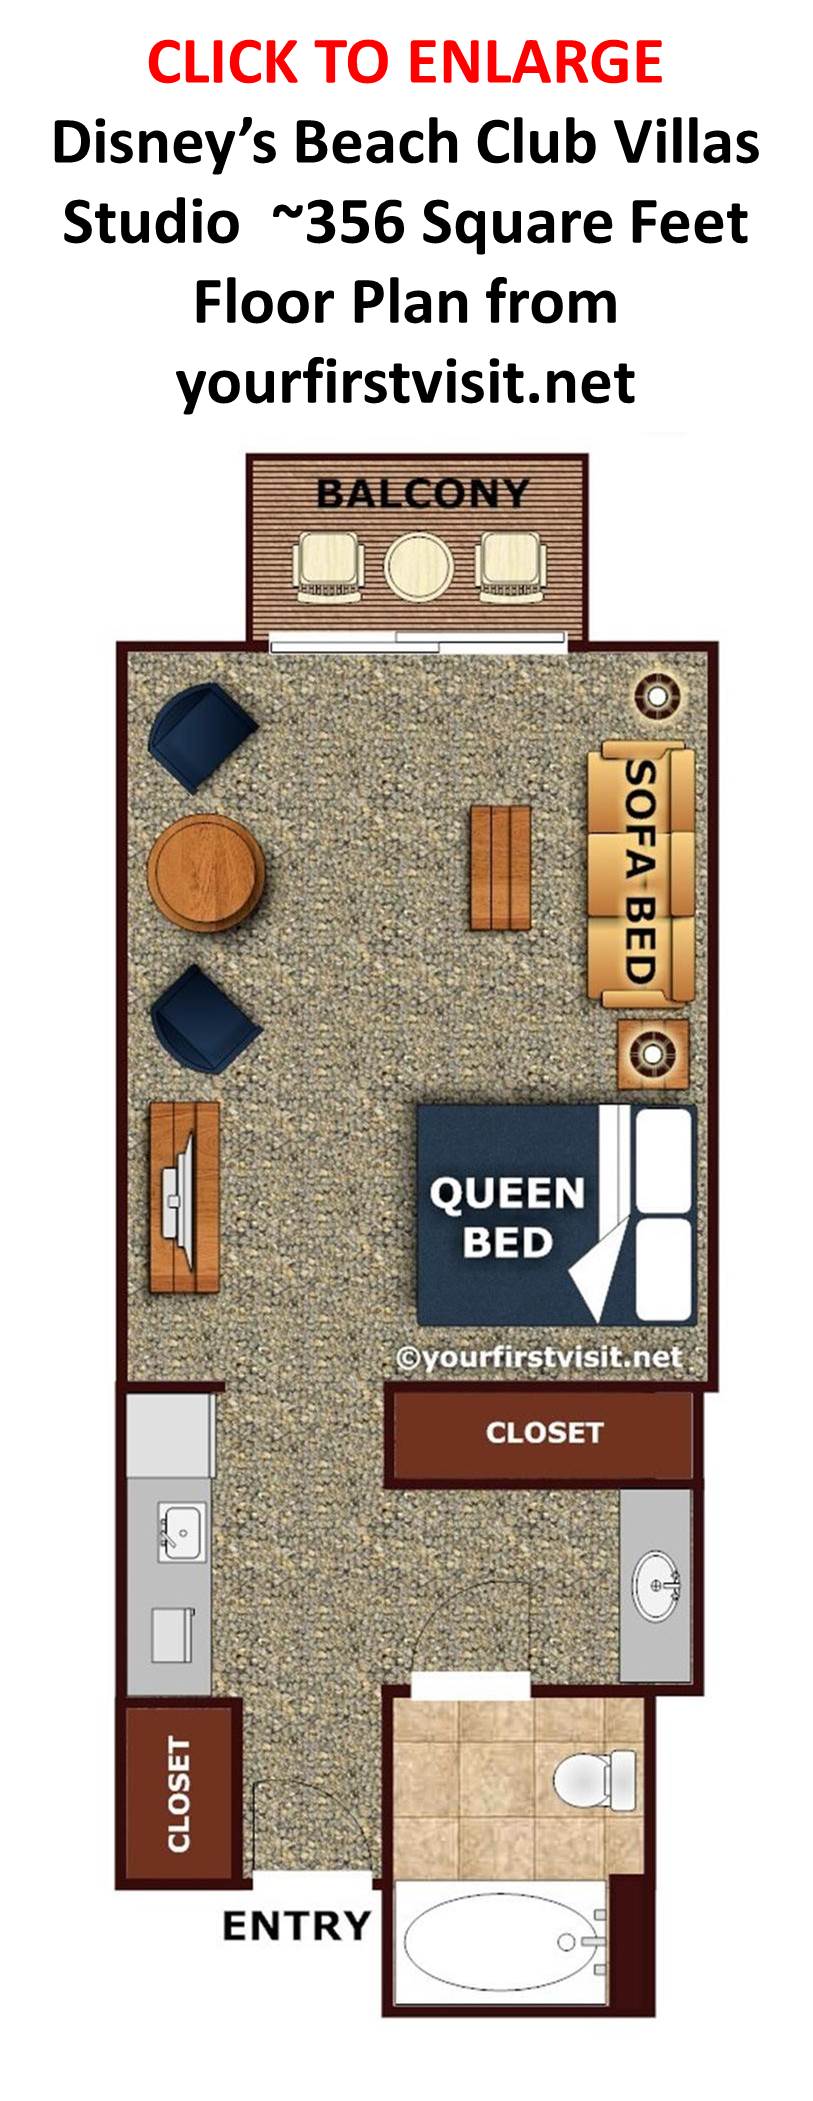 2 Bedroom Disney Beach Club Villas Floor Plan